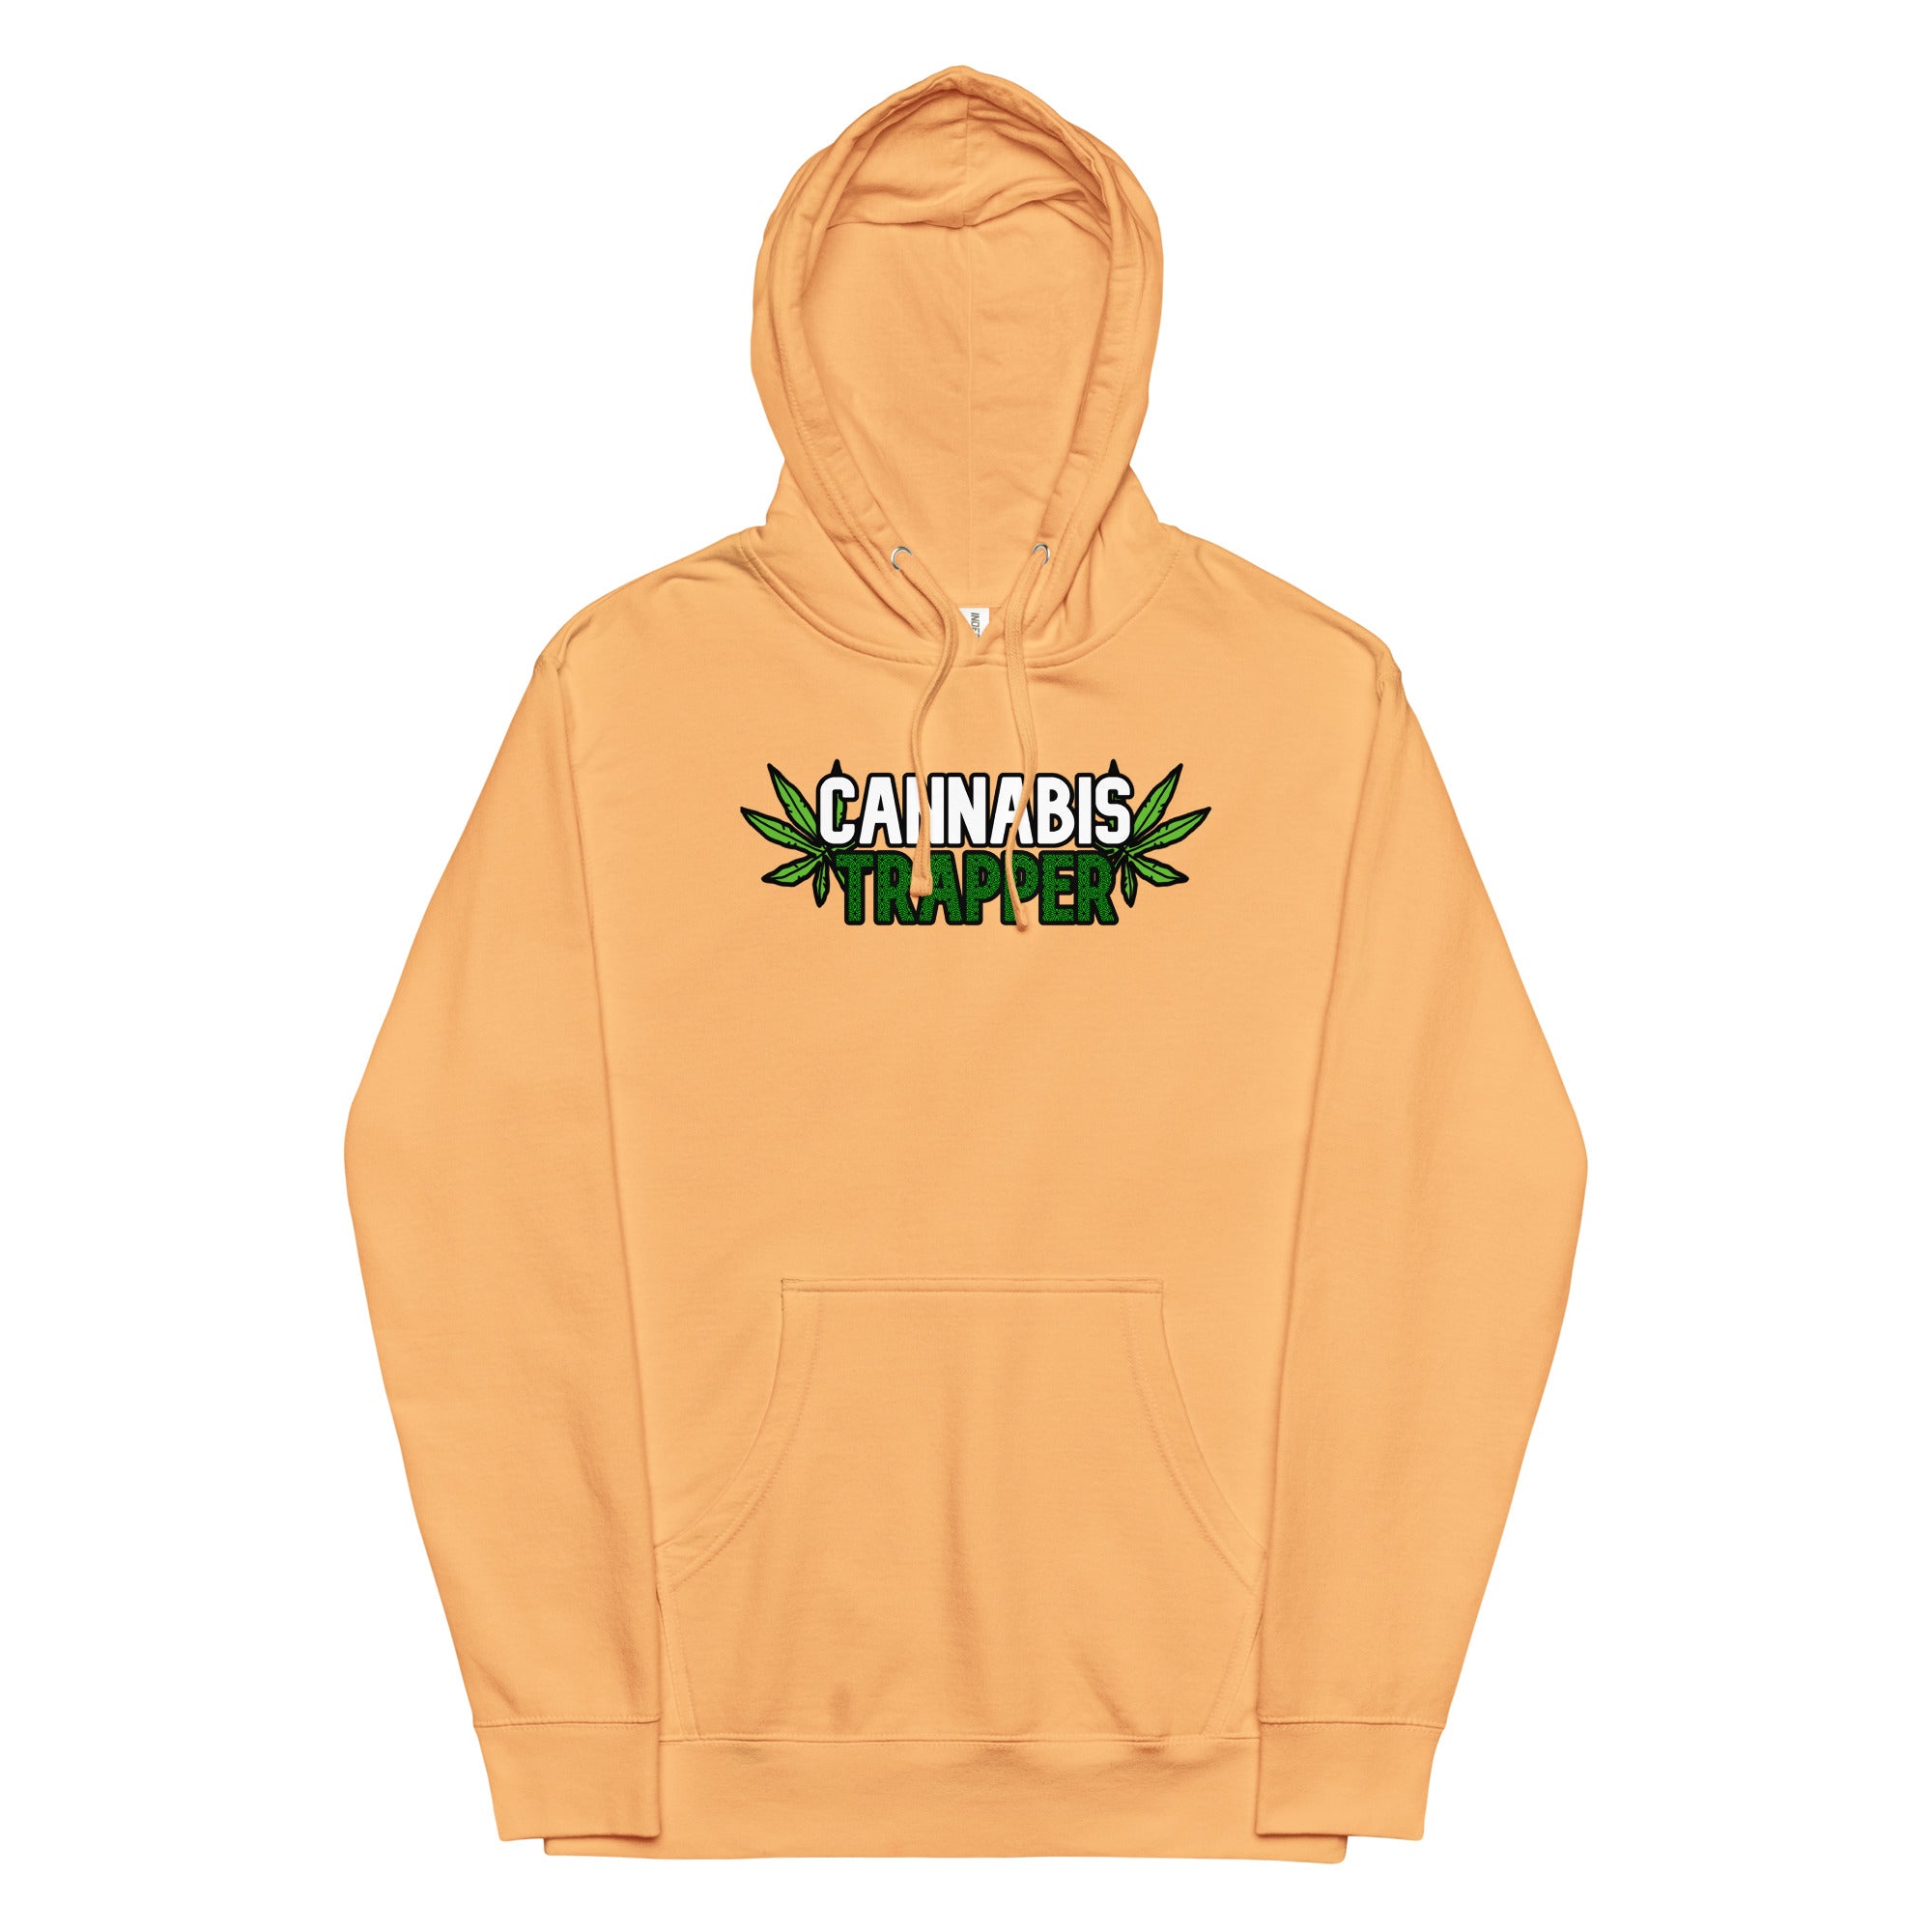 Cannabis weed hoodies